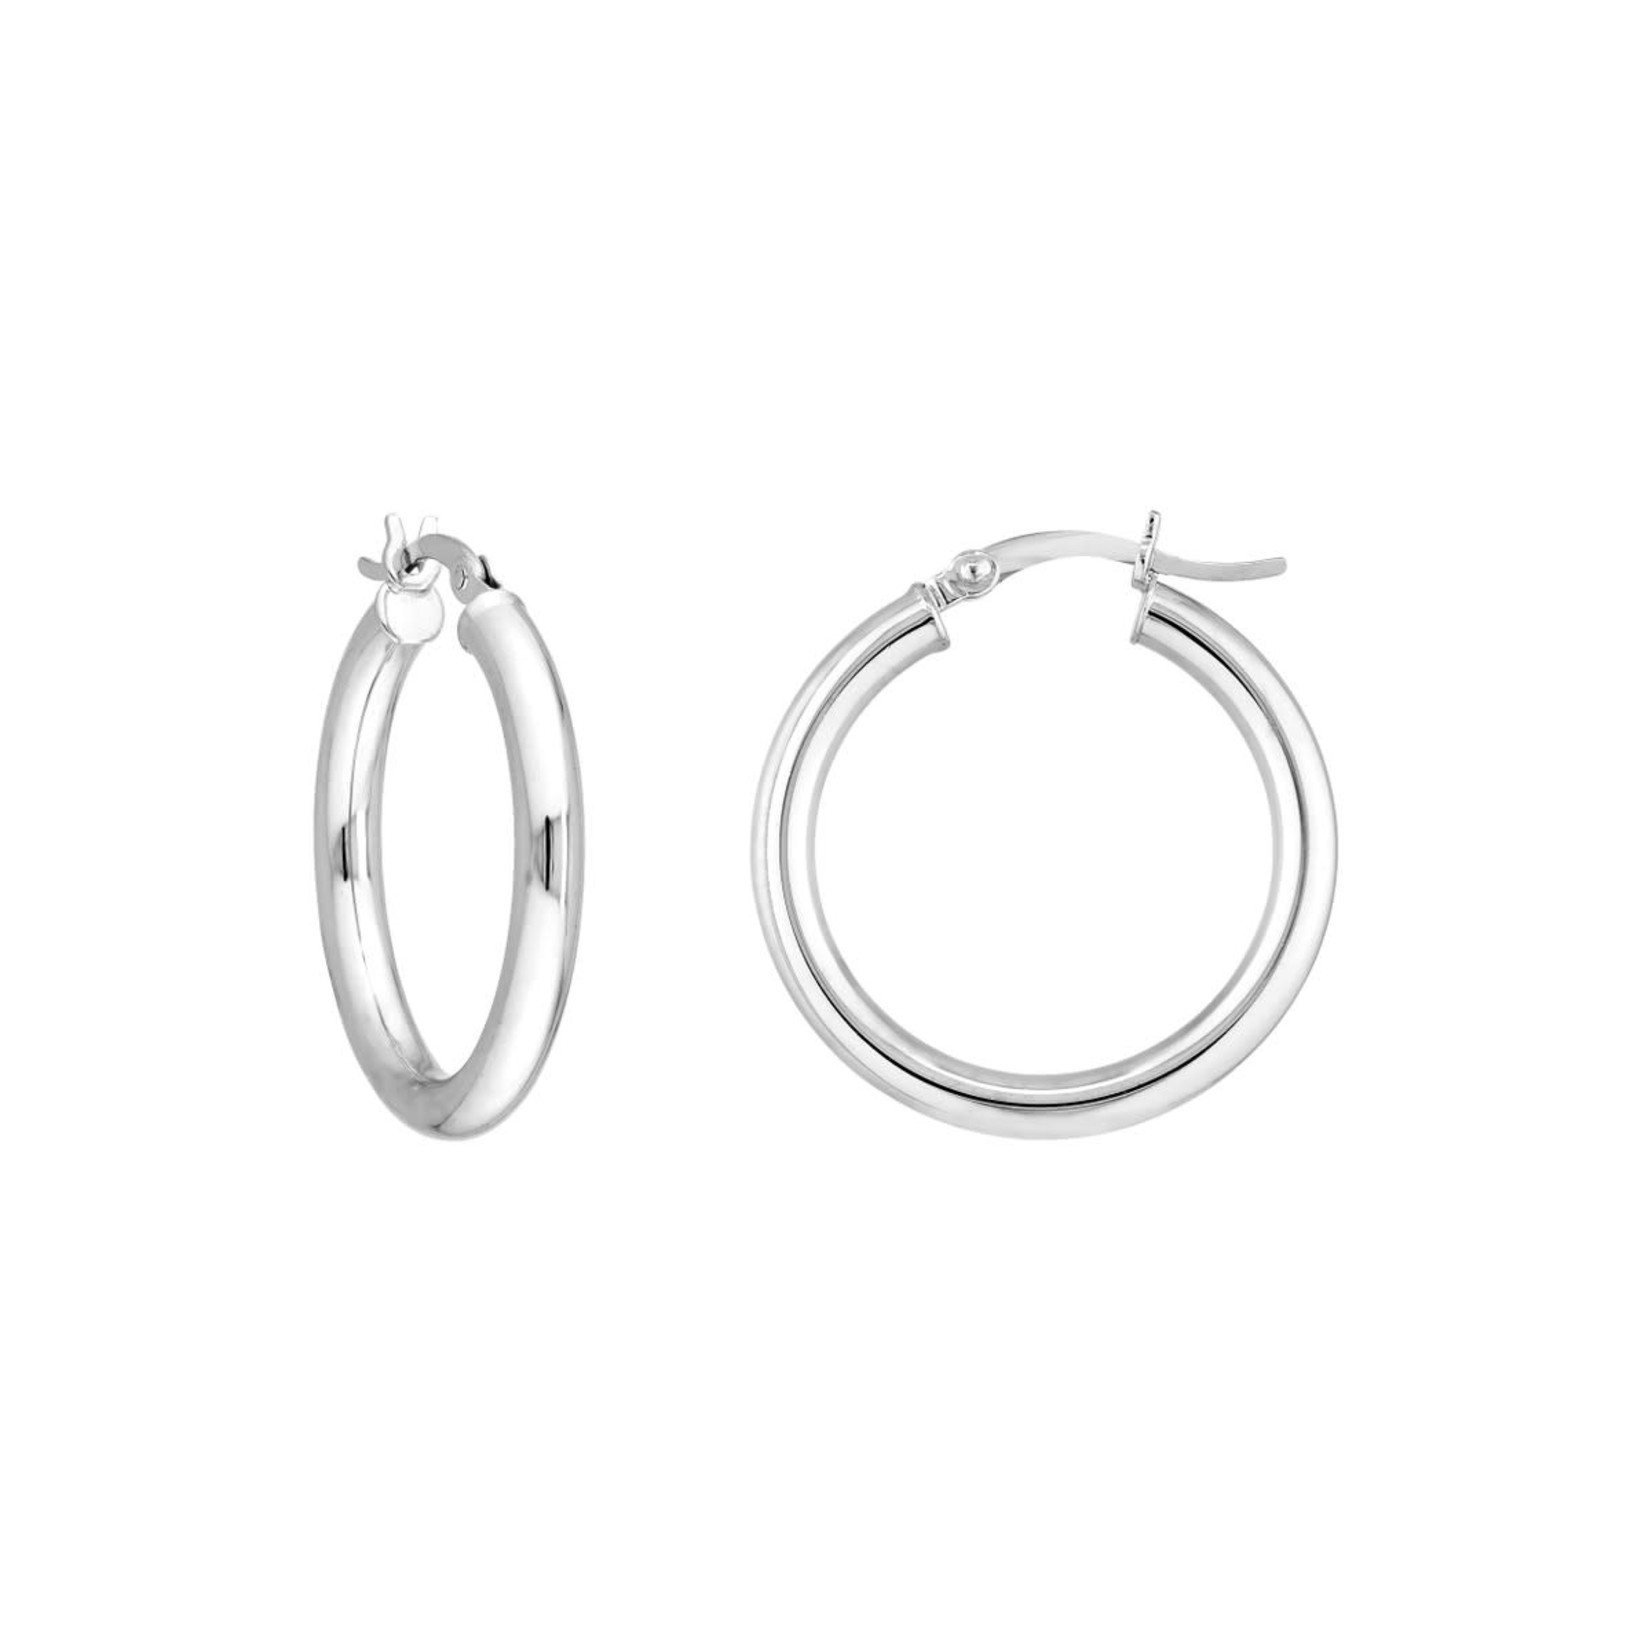 Sterling Silver Tube Hoop Earrings